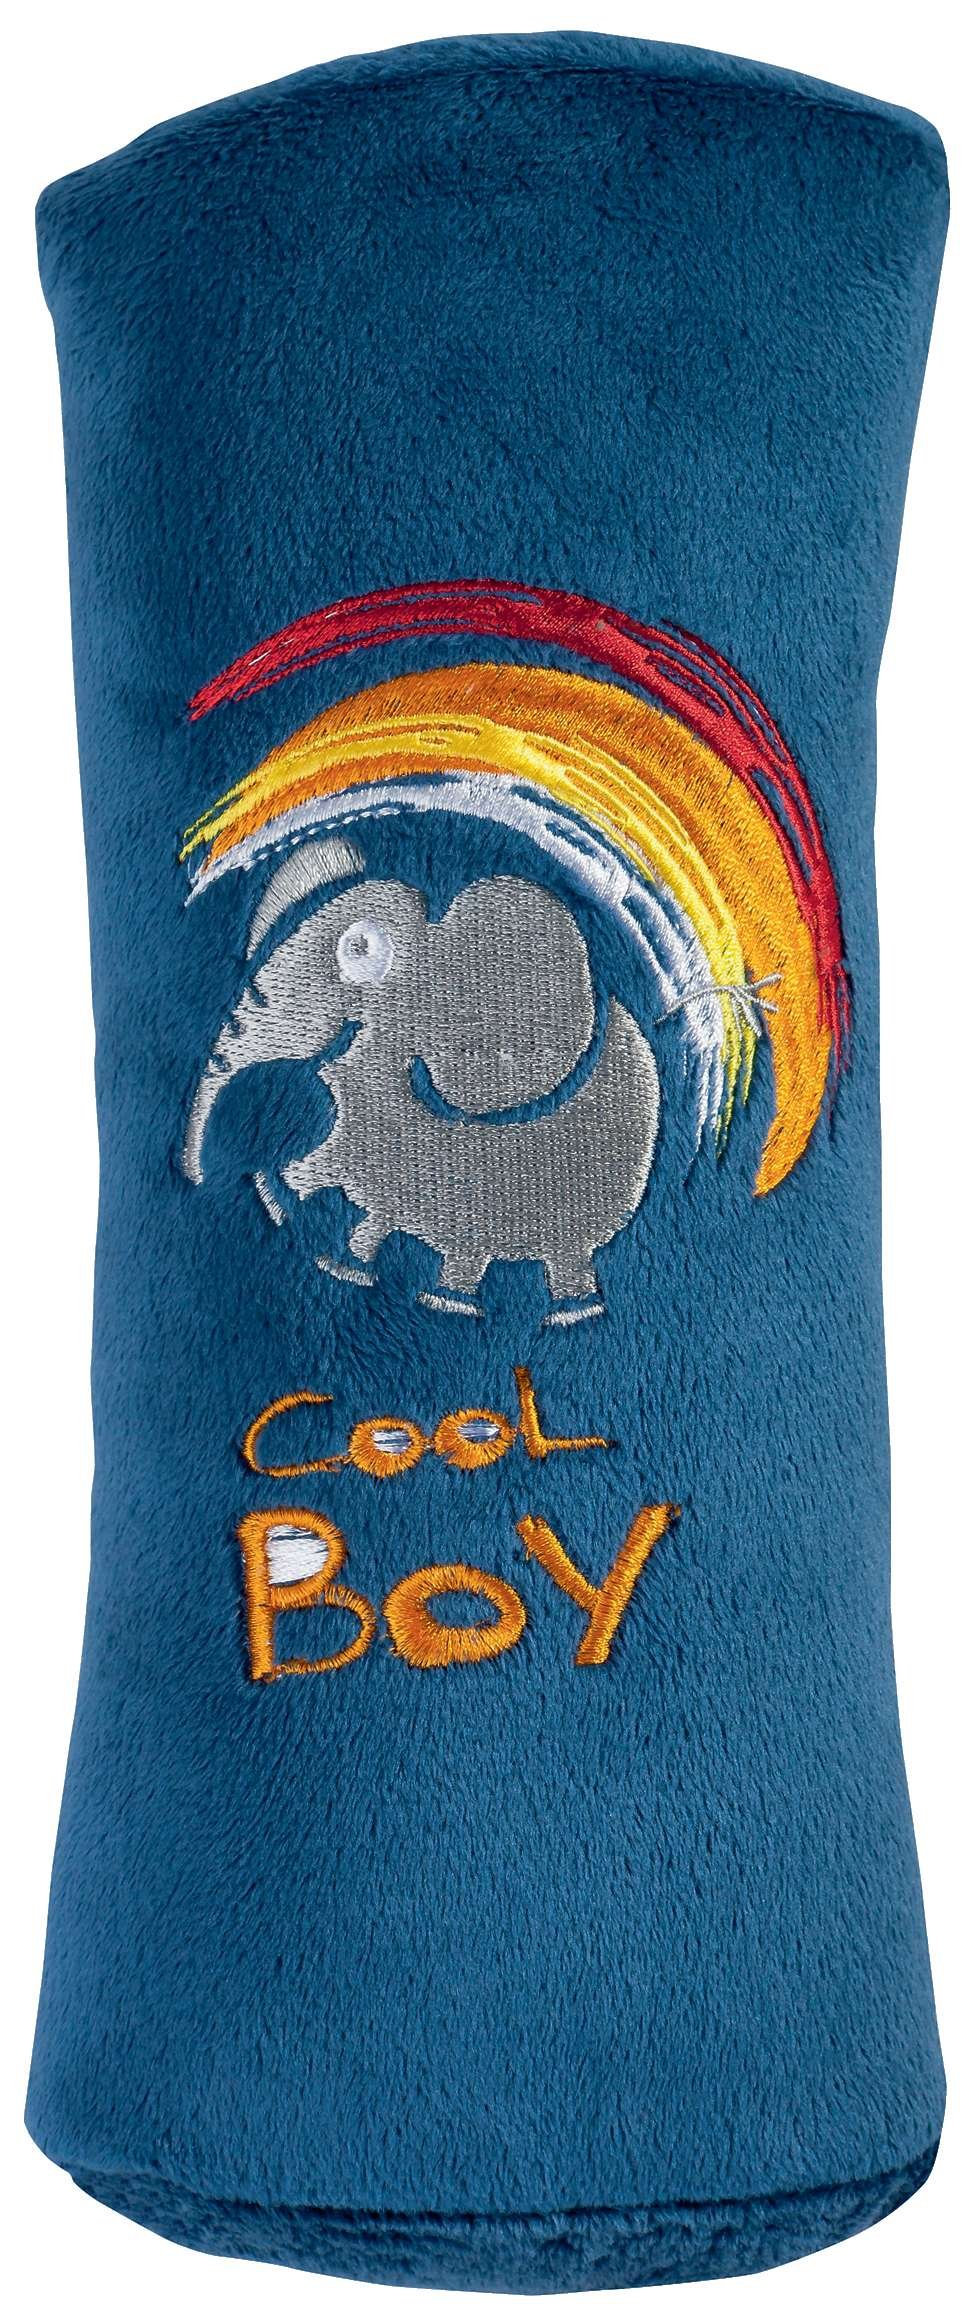 Cuscini per bambino Cool Boy blu da 5 anni